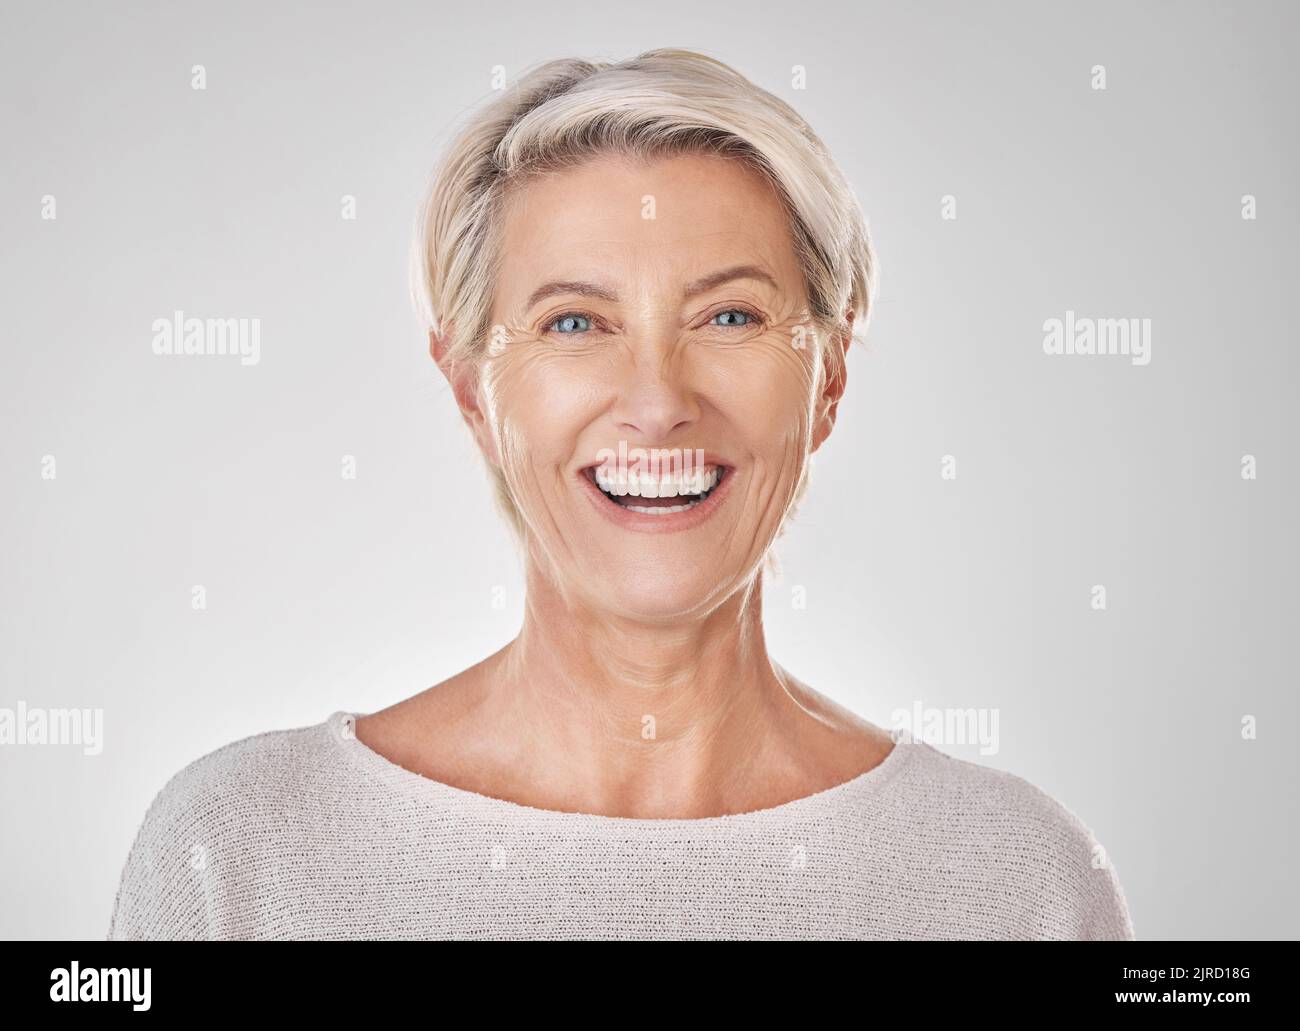 Ältere Frau mit Lächeln für Zahngesundheit, Schönheitspflege und zufriedene Gesicht gegen Studio-Mockup Hintergrund. Portrait von glücklichen Modell mit gesunden Stockfoto